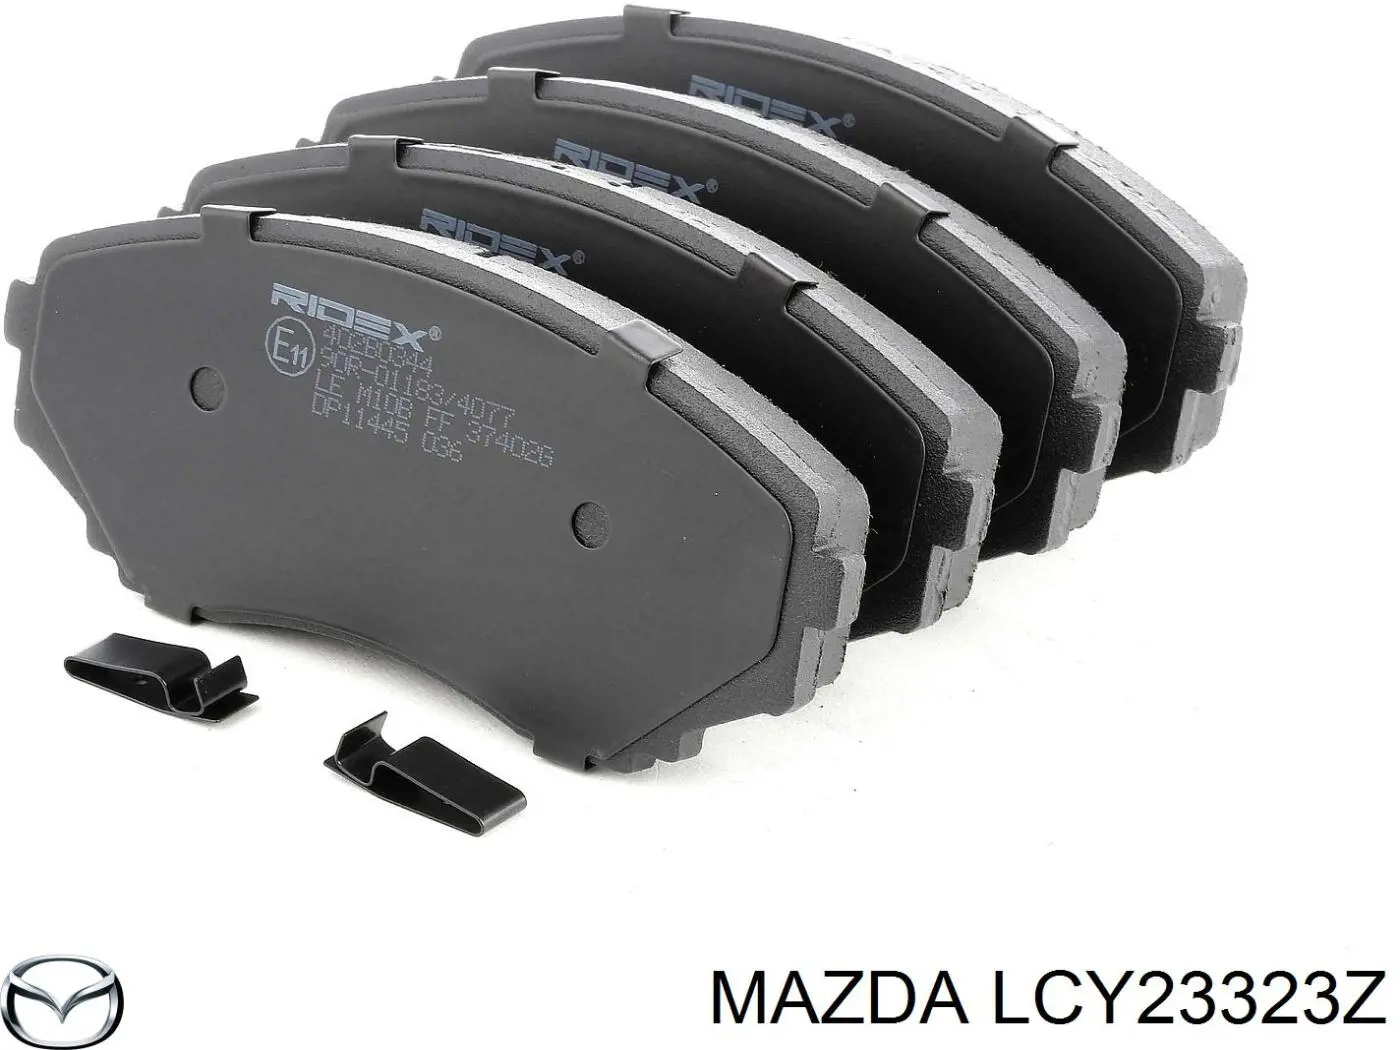 LCY23323Z Mazda pastillas de freno delanteras